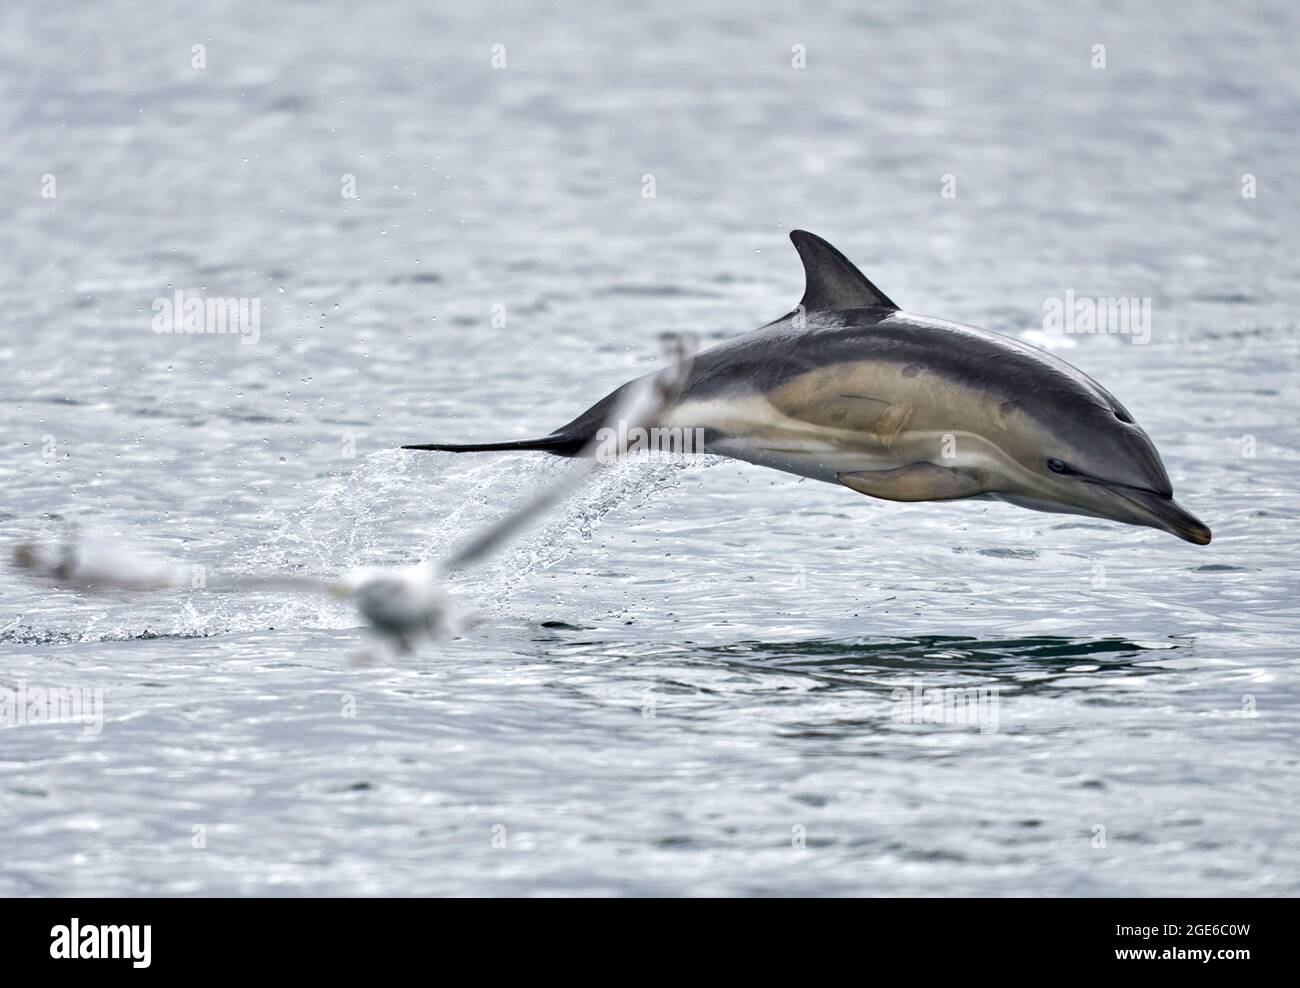 Teleobiettivo di breve becco comune delfino trasportato in mare essendo fotobombato da un gabbiano. Preso da una barca sulla strada per le Isole Shiant. Foto Stock